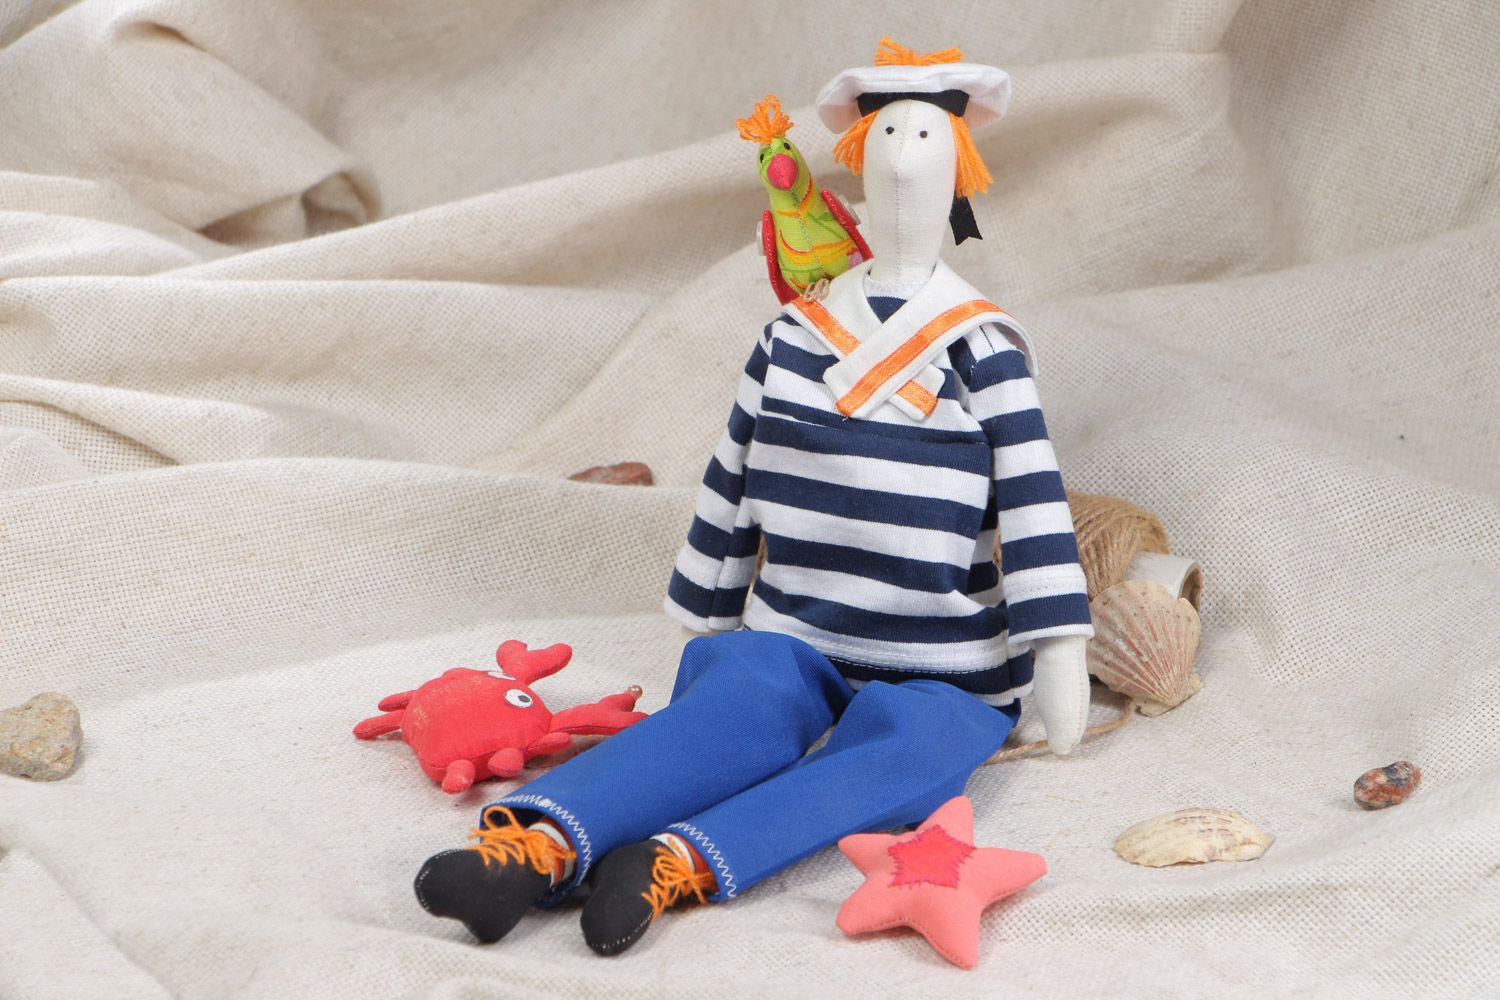 Мягкая игрушка из натурального материала ручной работы в виде моряка с попугаем фото 1